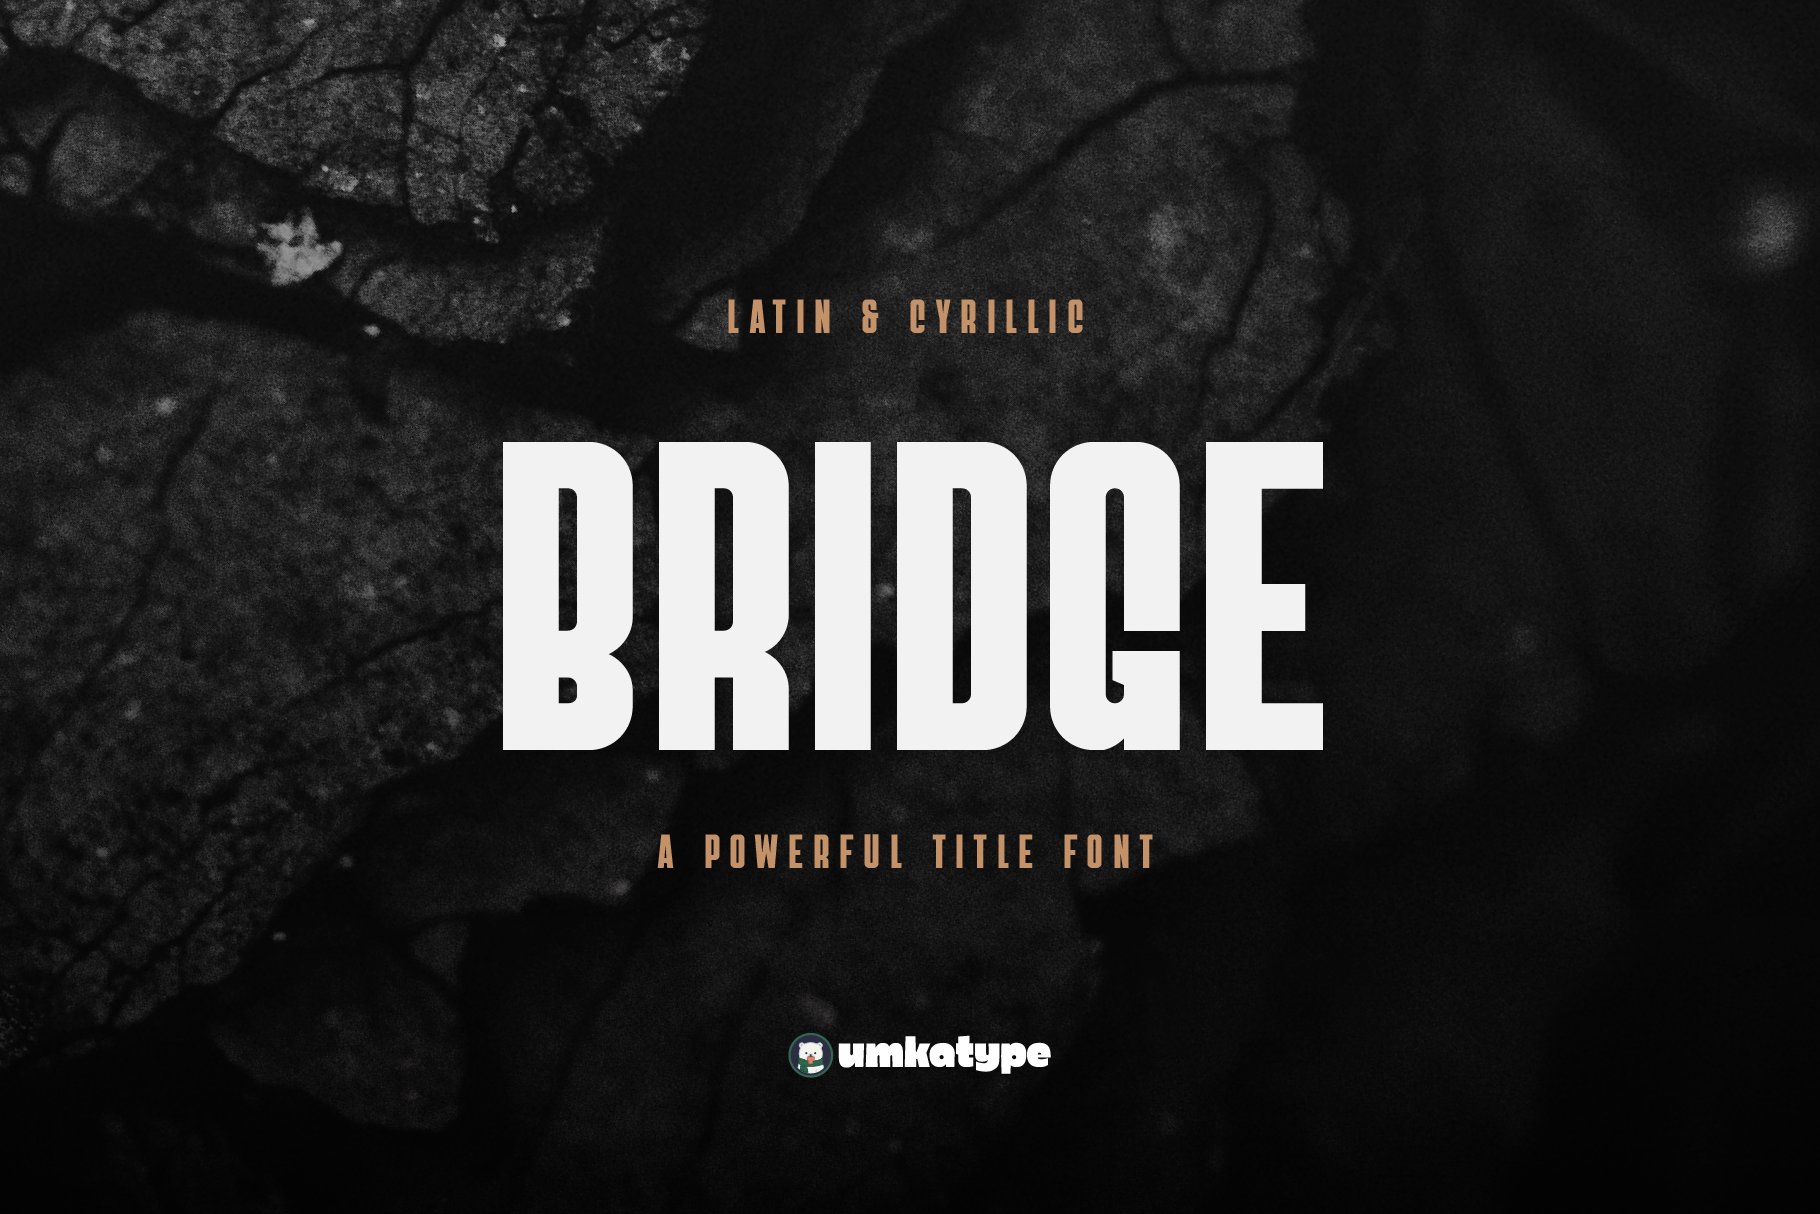 Bridge - Sans Serif Font cover image.